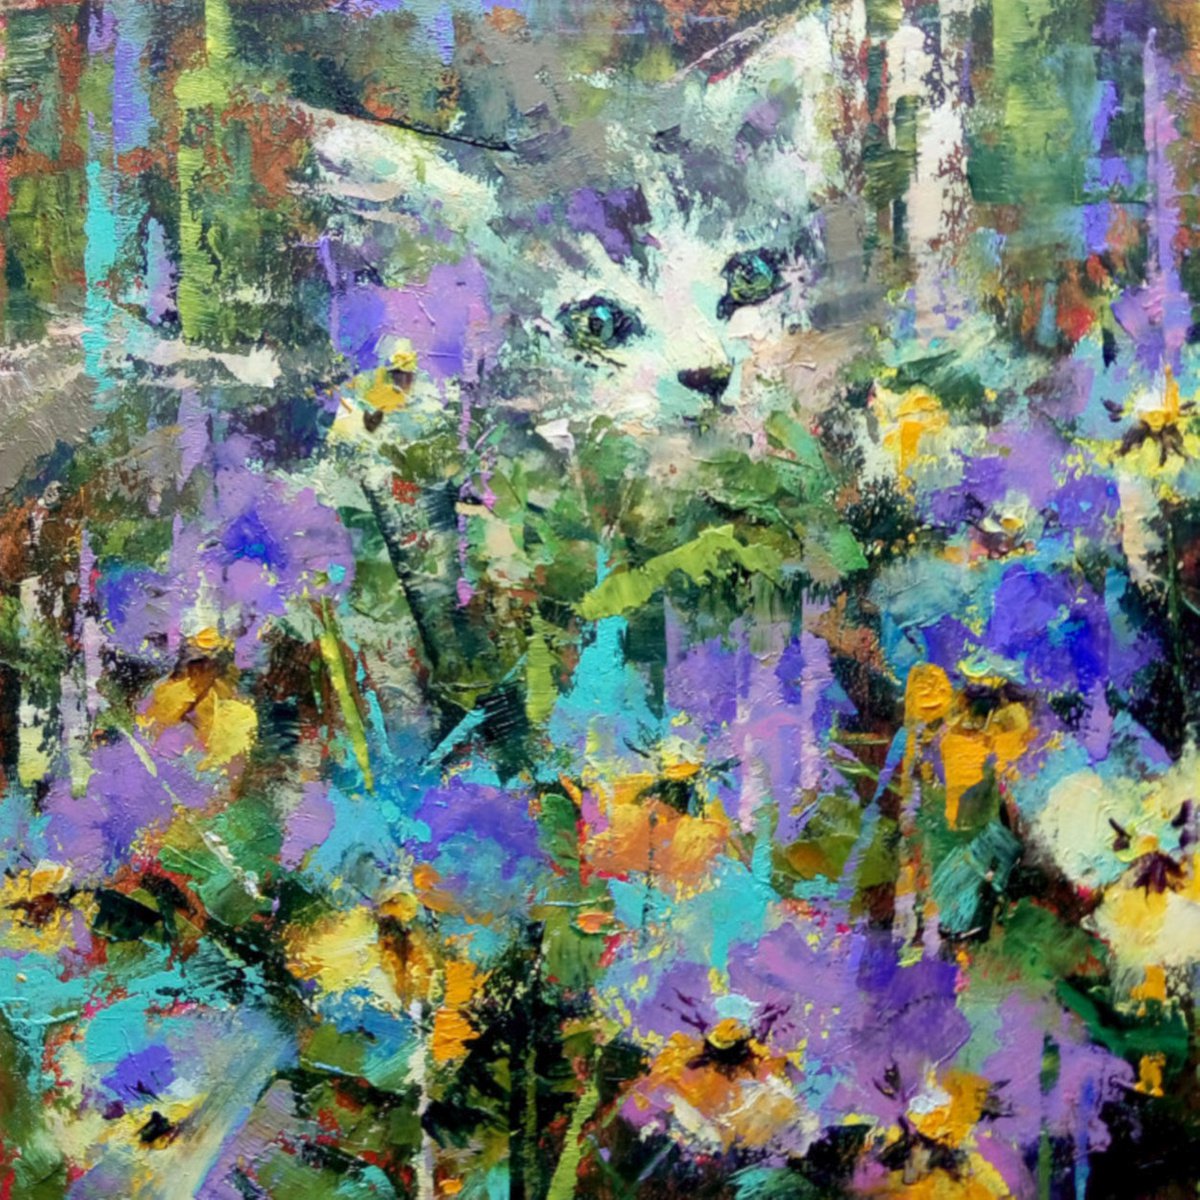 Kitten in flowers by Valerie Lazareva